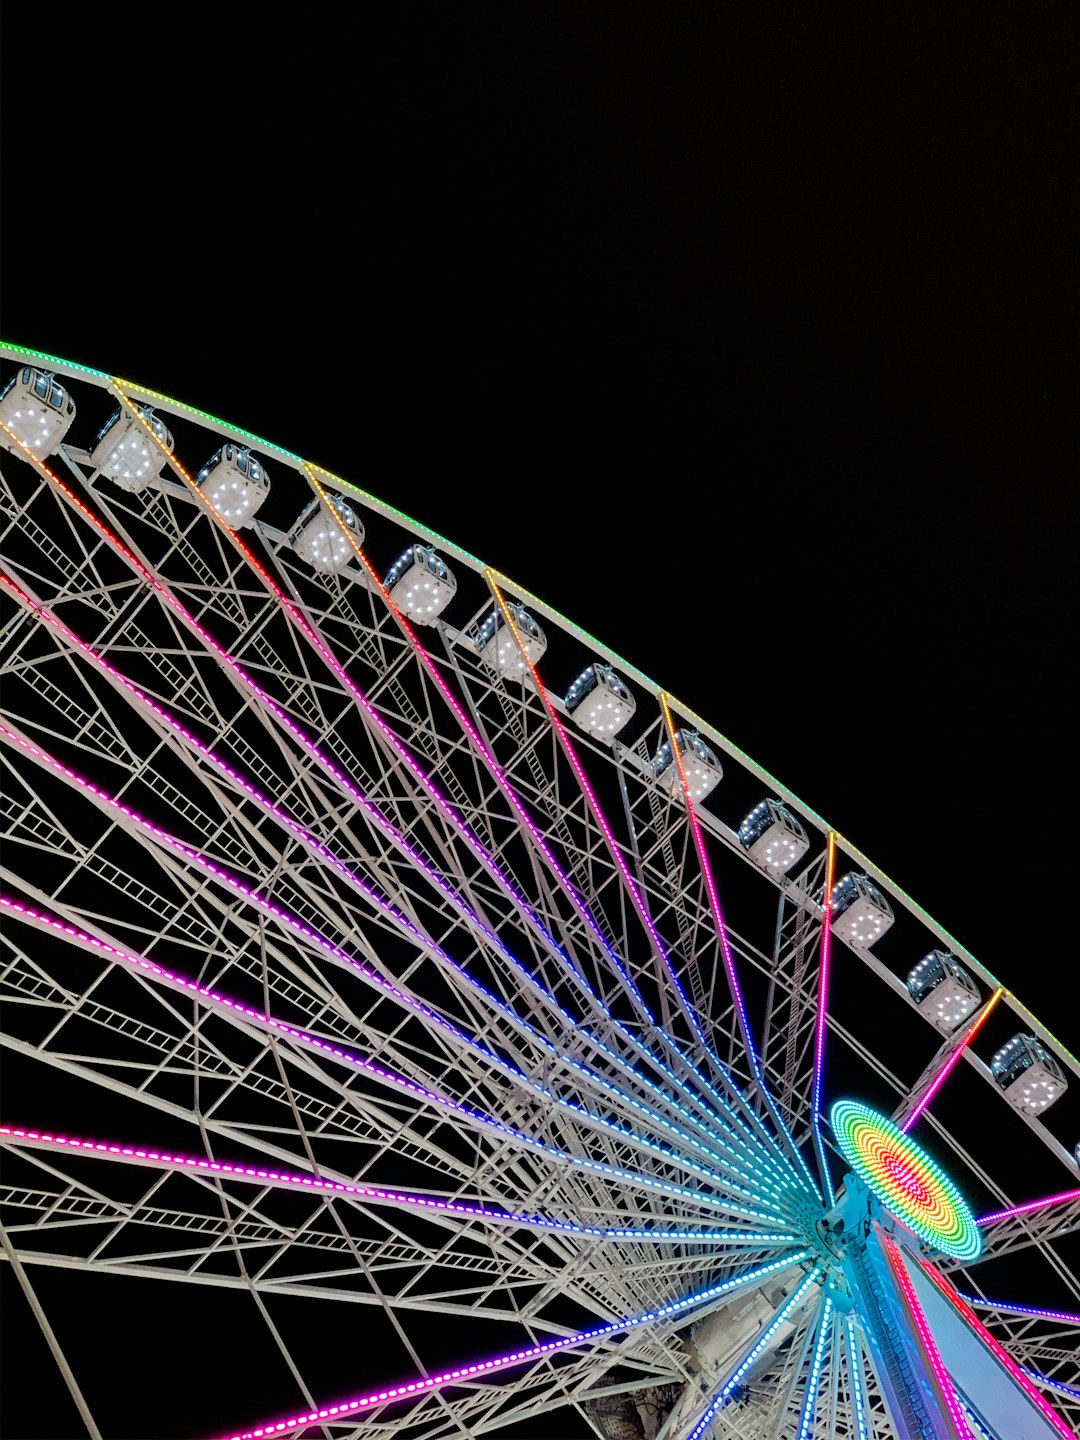 Ferris wheel photo spot Hyde Park Winter Wonderland London Eye Waterloo Pier